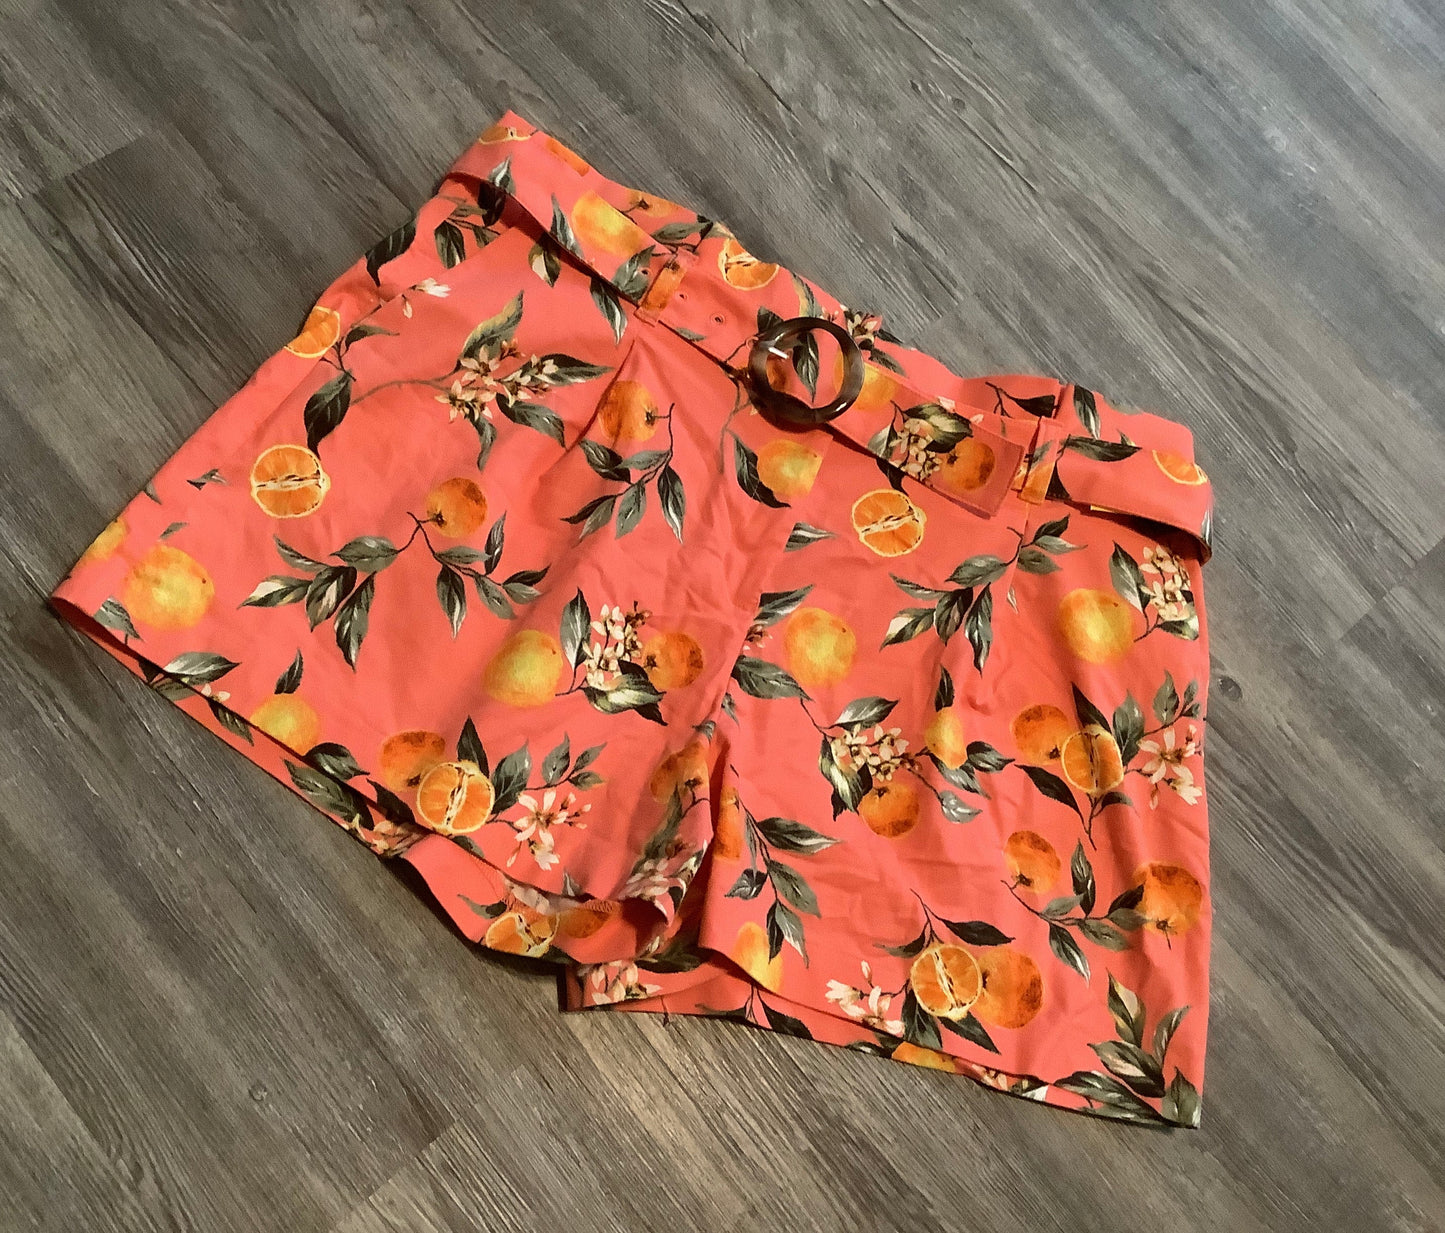 Orange Shorts Loft, Size 16